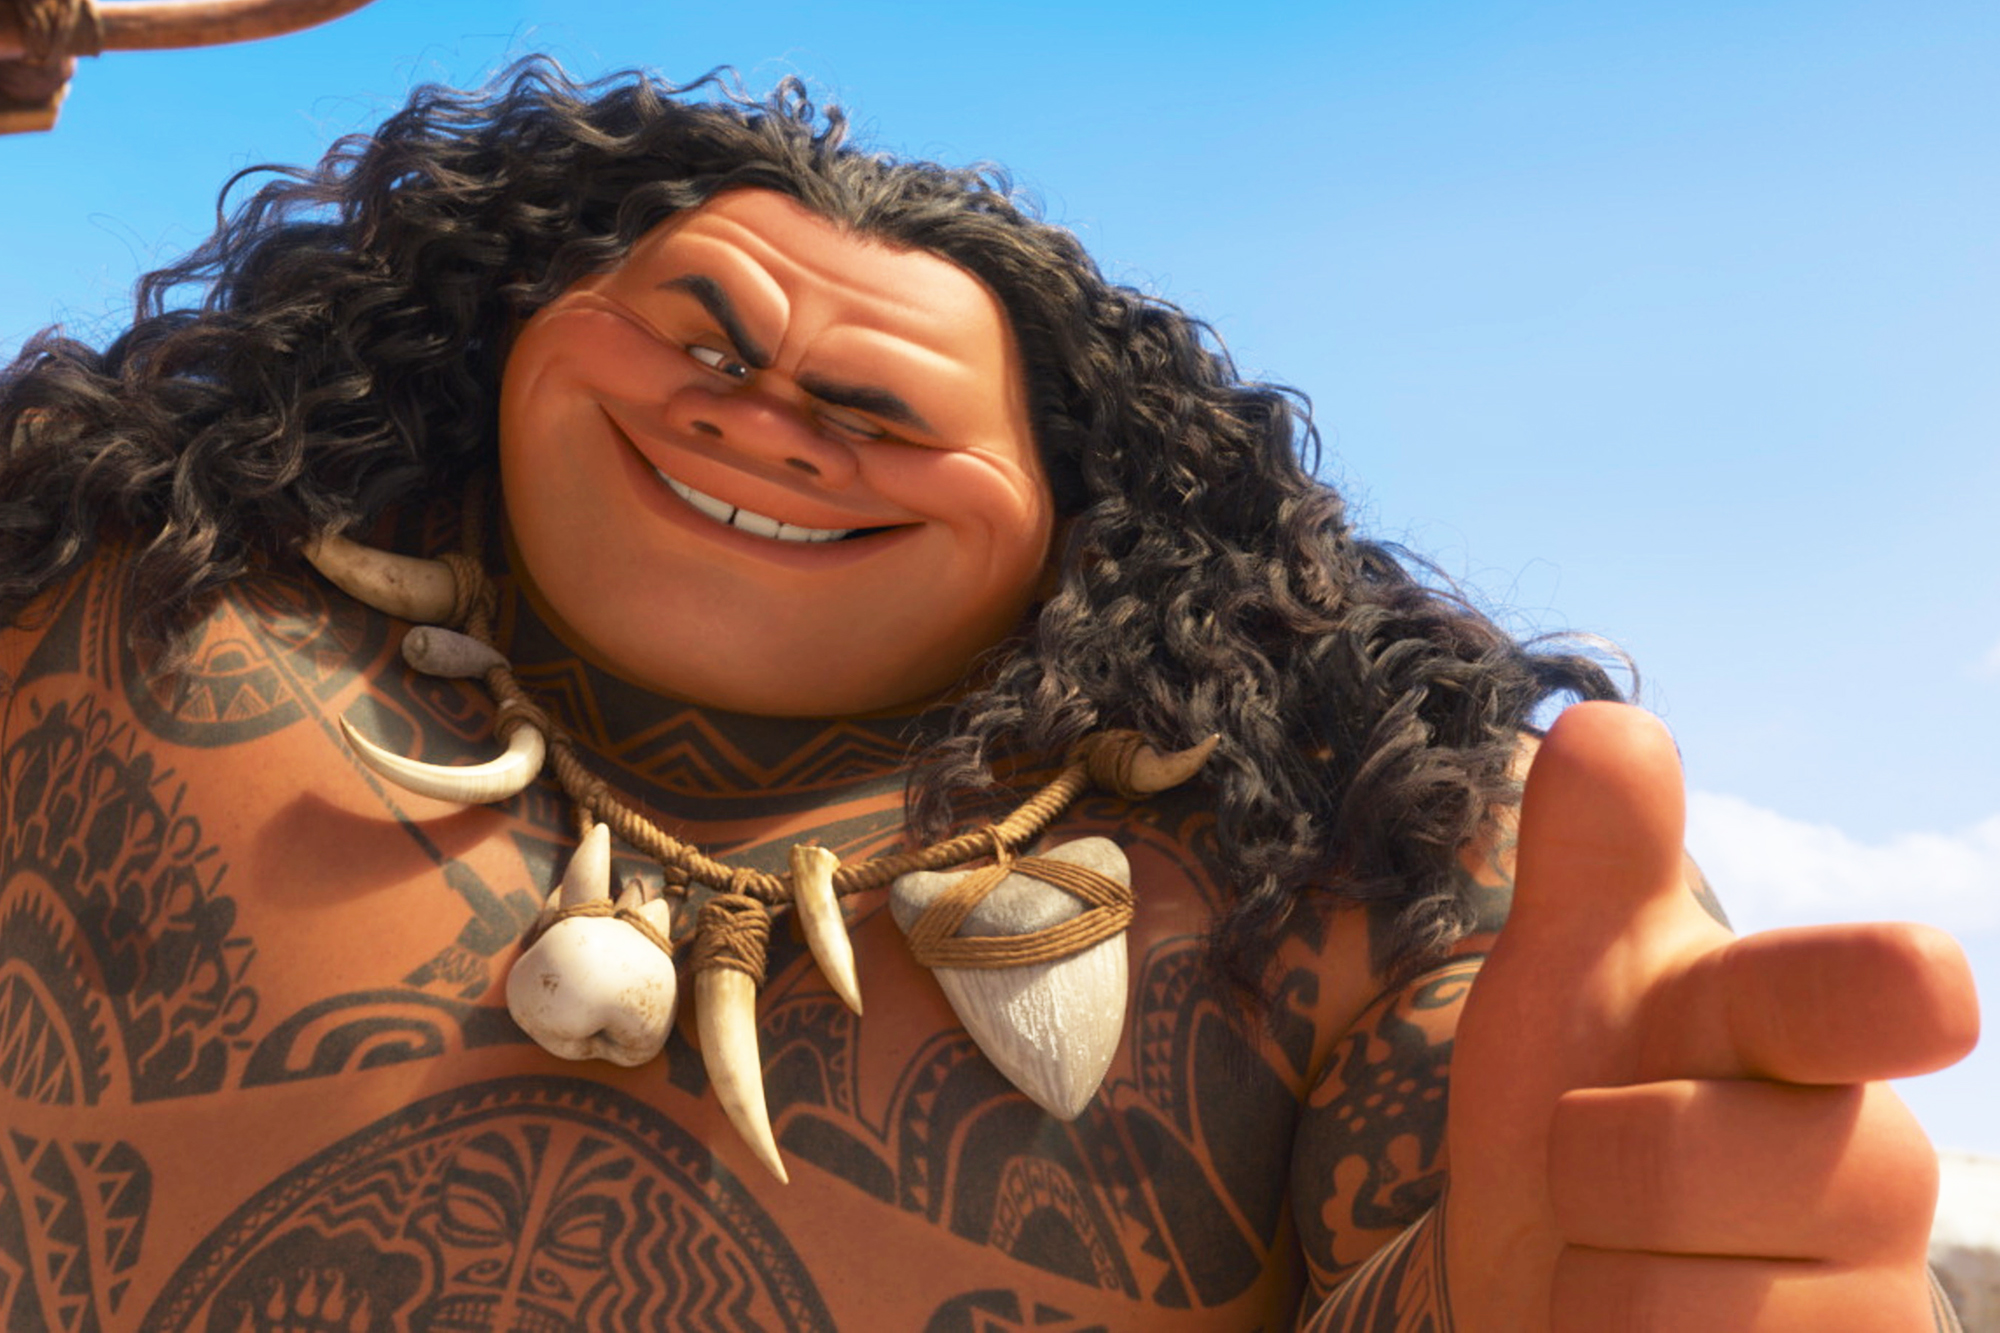 Tattooed demigod Maui, voiced by Johnson in Disney's Moana, 2016.